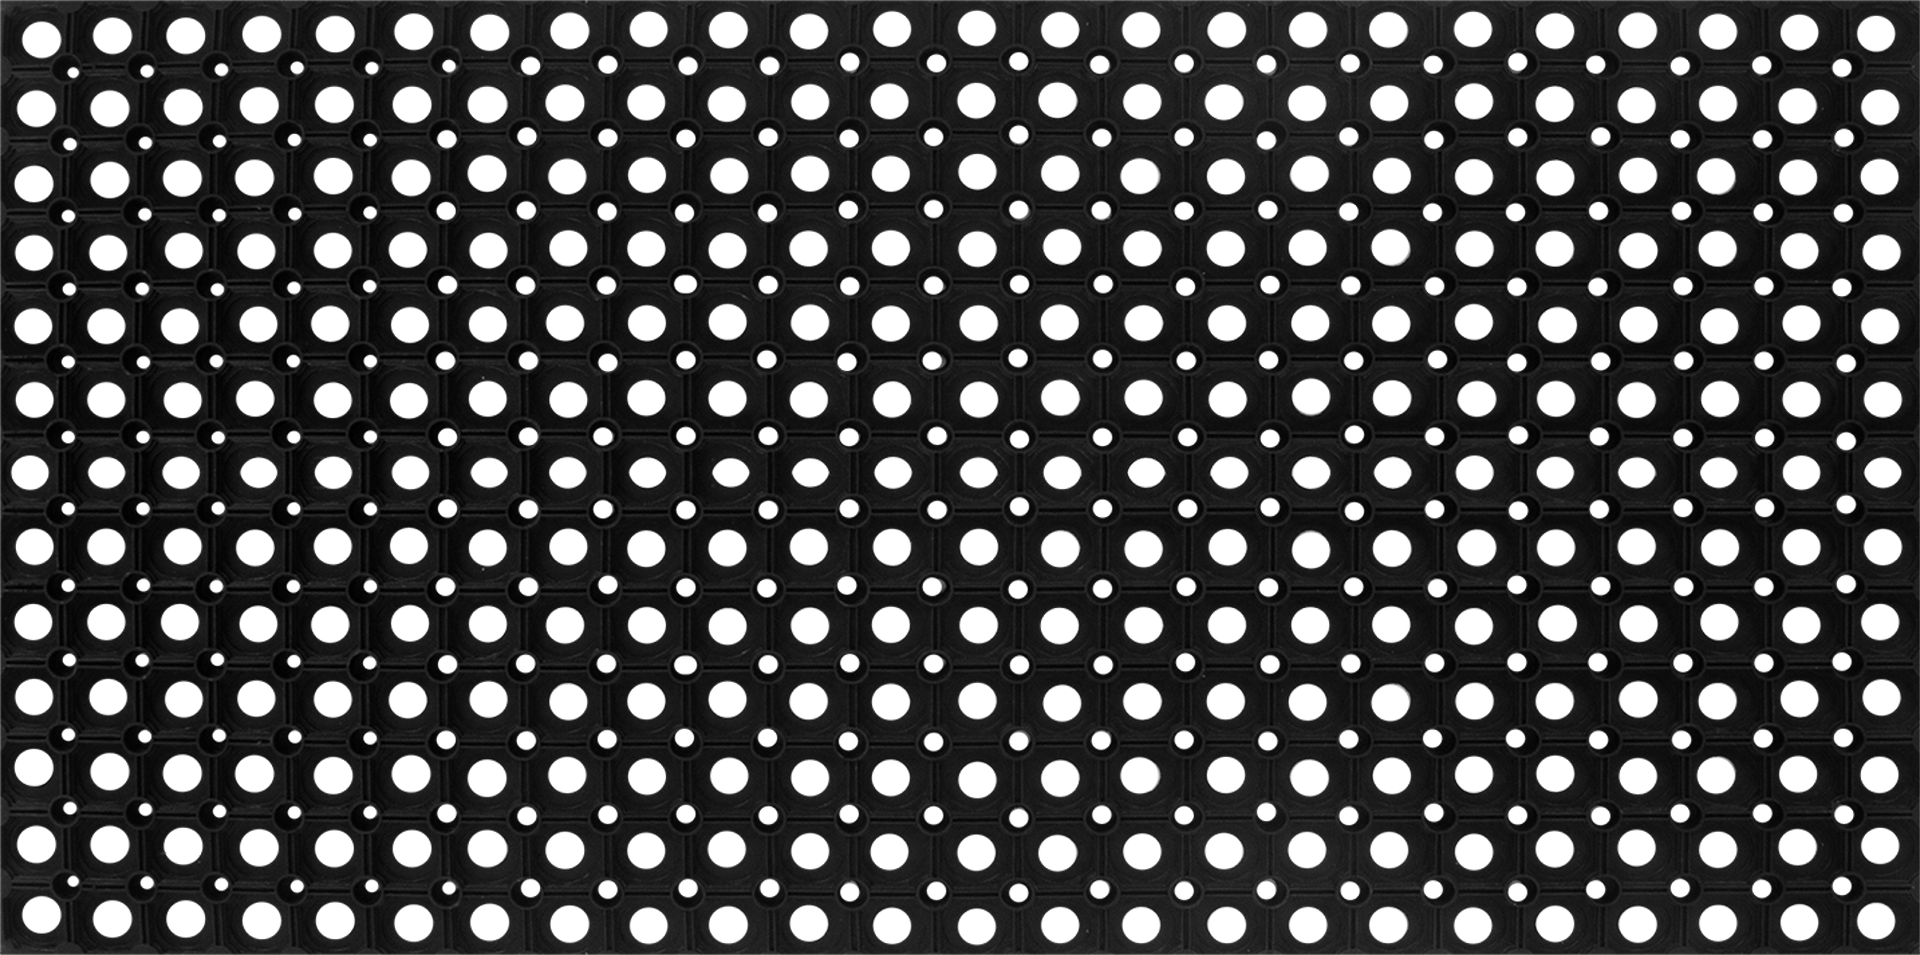 Коврик Inspire Flavio 50x100 см резина цвет чёрный